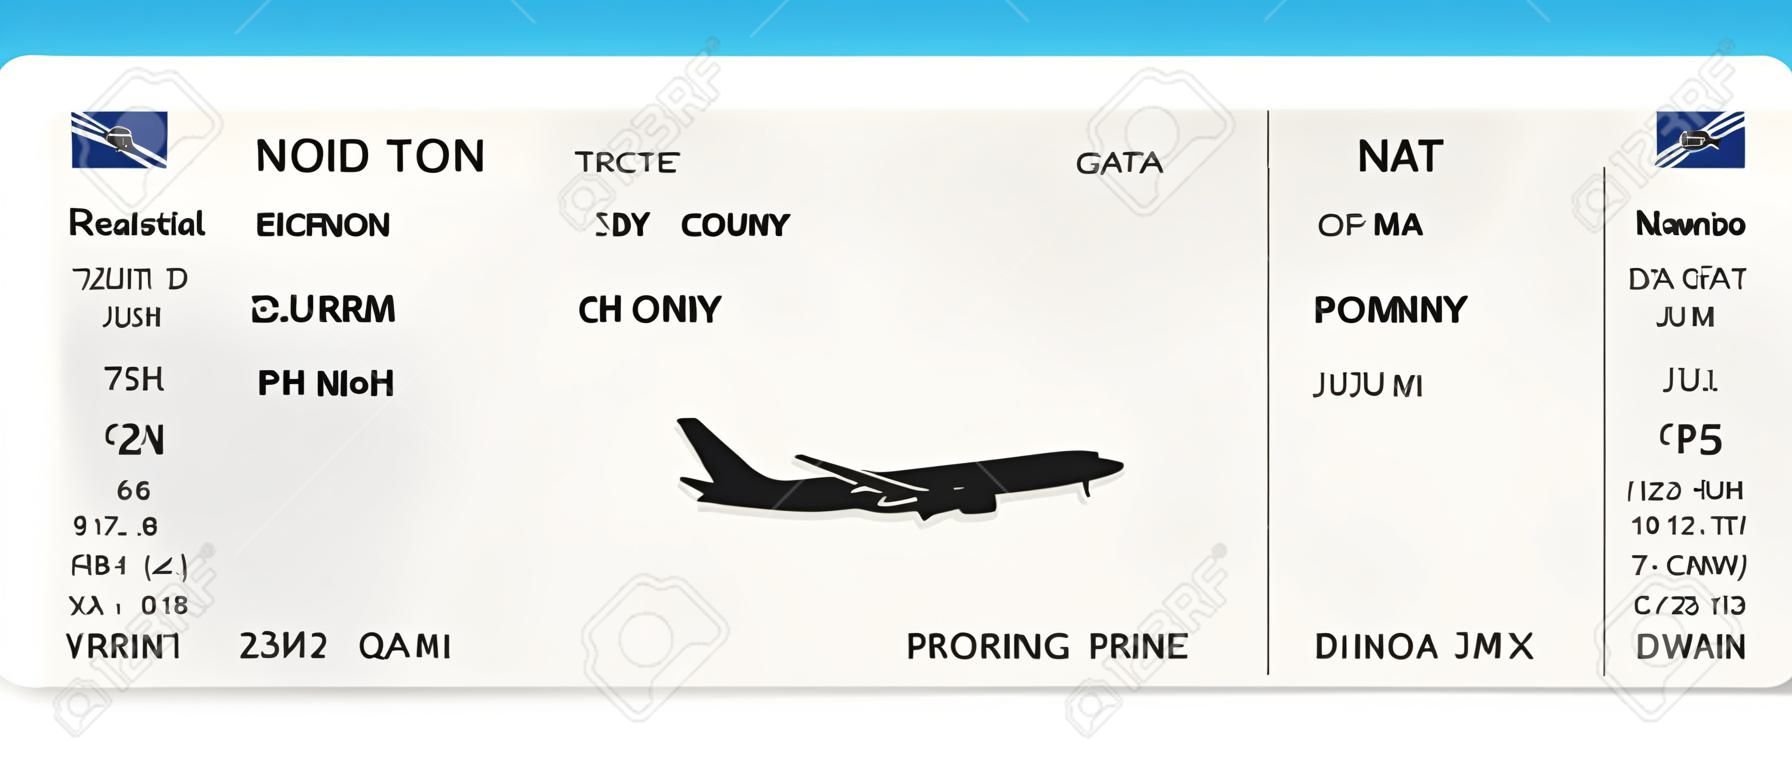 実物ではないフライト時間と乗客名を持つブルーのリアルな航空券または搭乗券の設計。搭乗券のパターンのベクトルイラスト